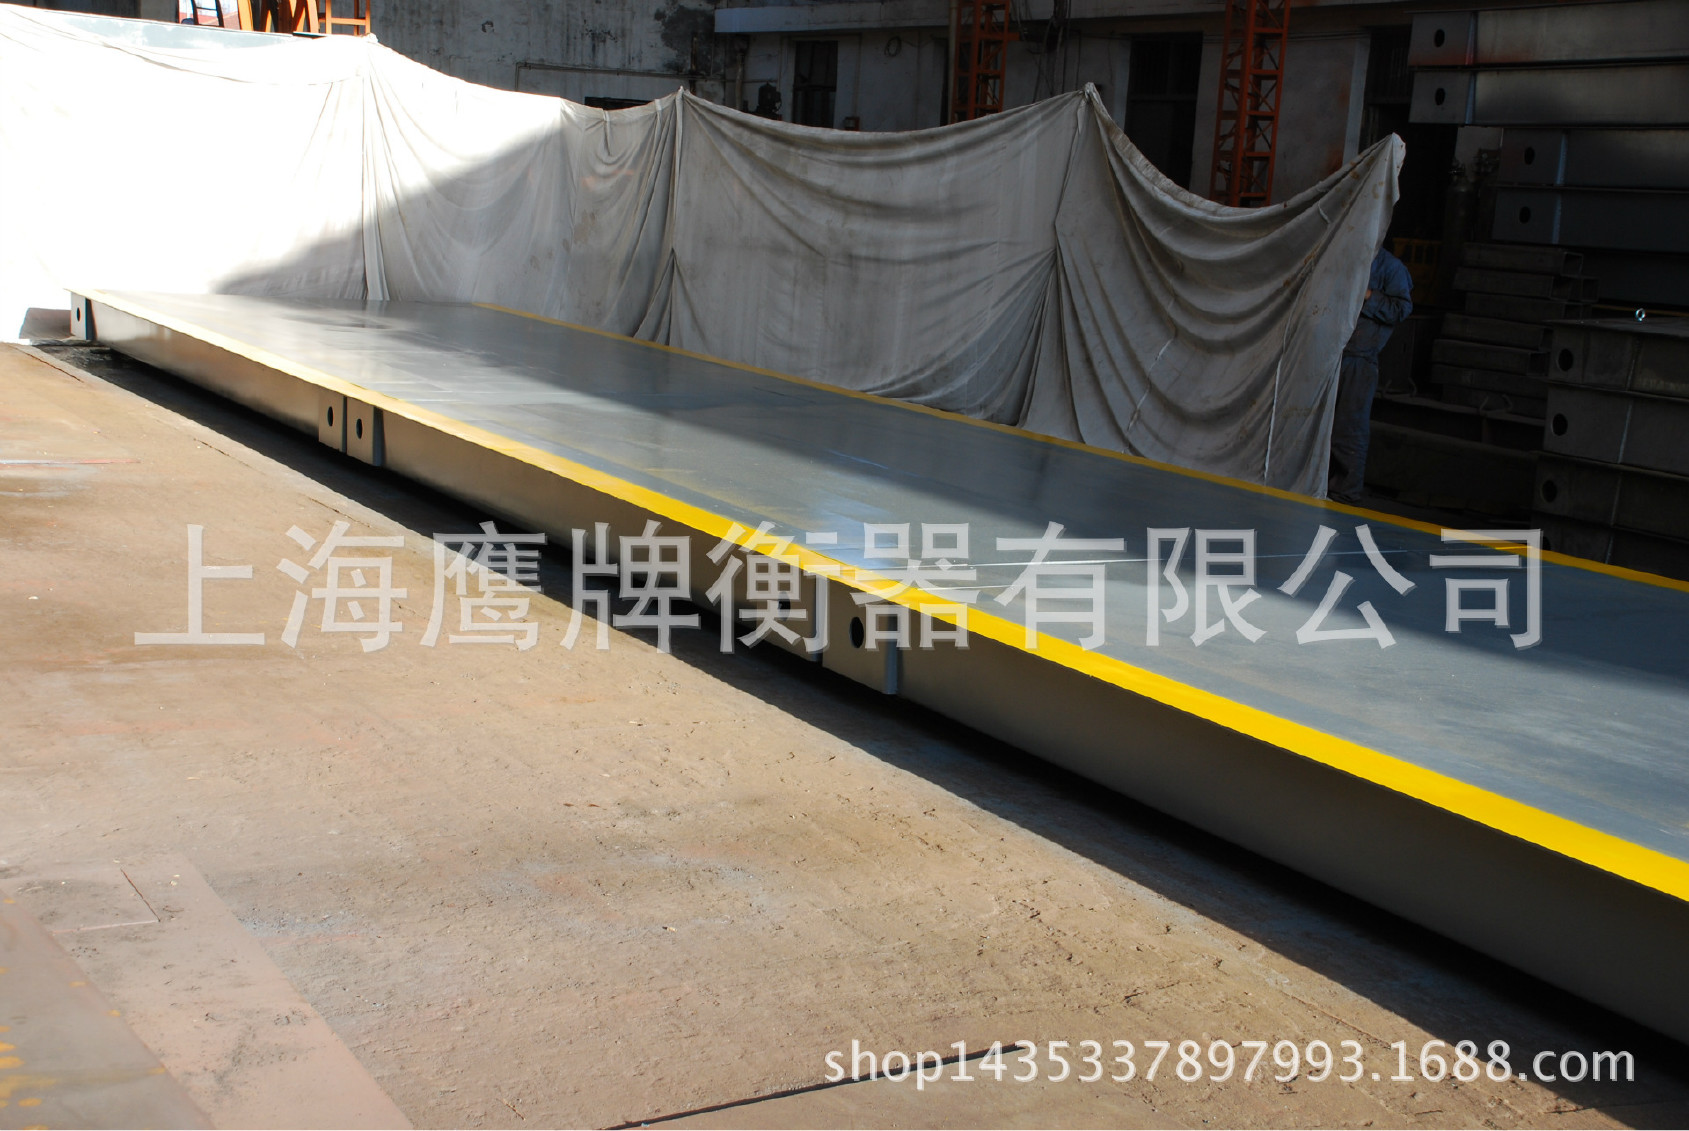 上海鹰牌钢槽汽车衡 数字电子汽车衡钢槽 定制地磅钢槽示例图6